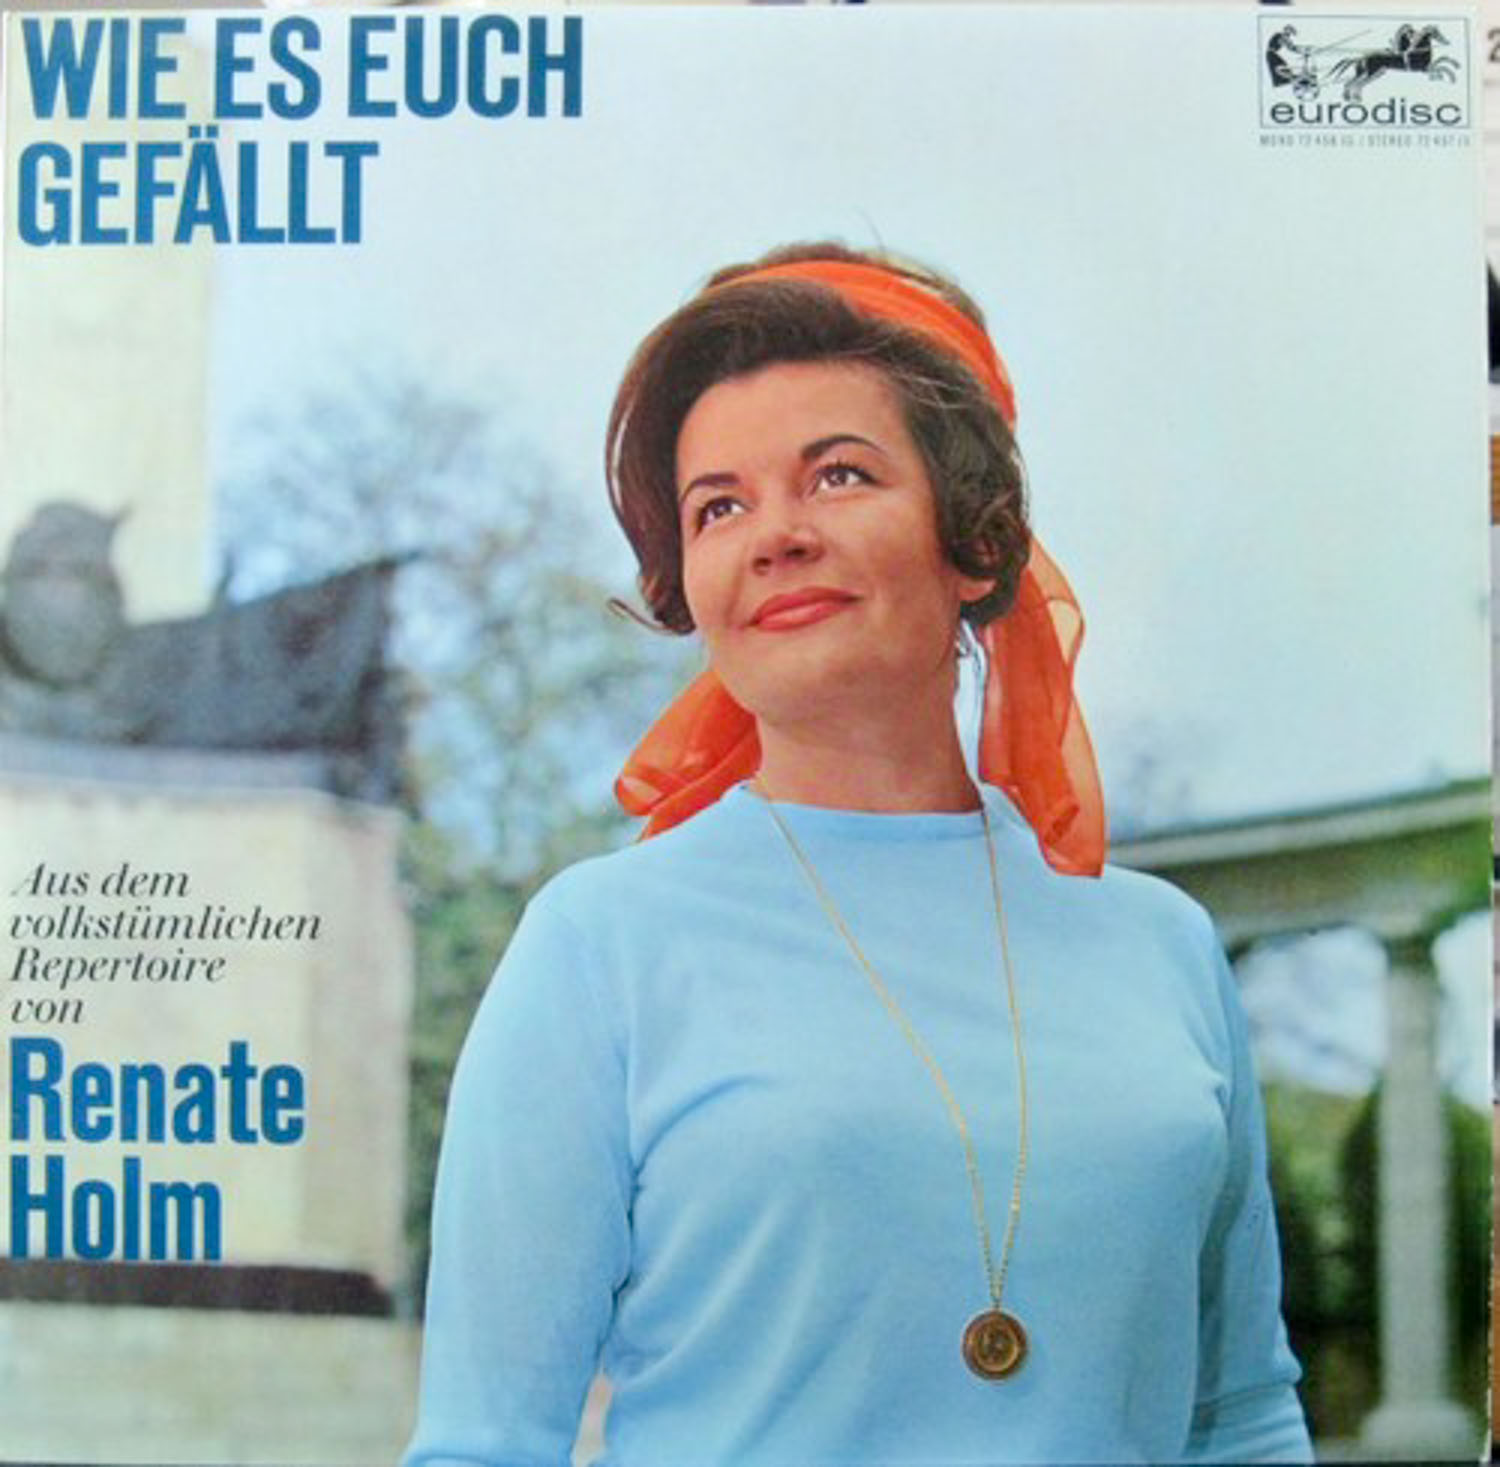 Renate Holm  Wie es euch gefällt (72 456 IU)  *LP 12'' (Vinyl)*. 